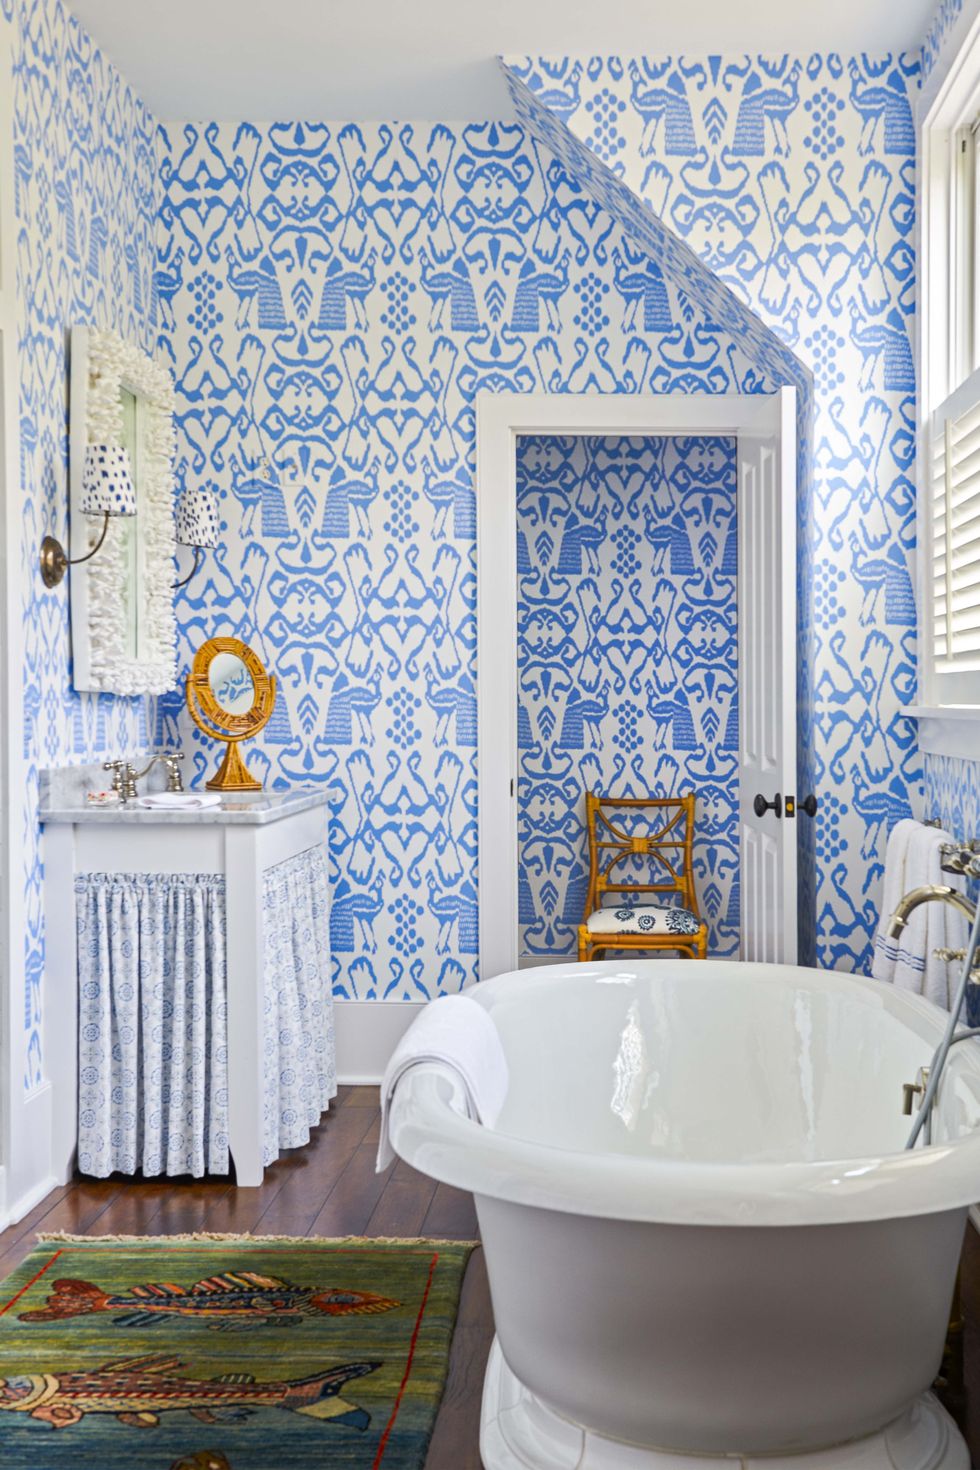 Sự hòa quyện giữa sắc trắng thanh lịch và xanh lam tươi mát tạo nên một rung cảm tuyệt vời khi bước vào phòng tắm này. Những chi tiết nhỏ như ghế ngồi, gương soi hay tấm rèm che dưới bồn rửa thể hiện sự tinh tế của NTK.